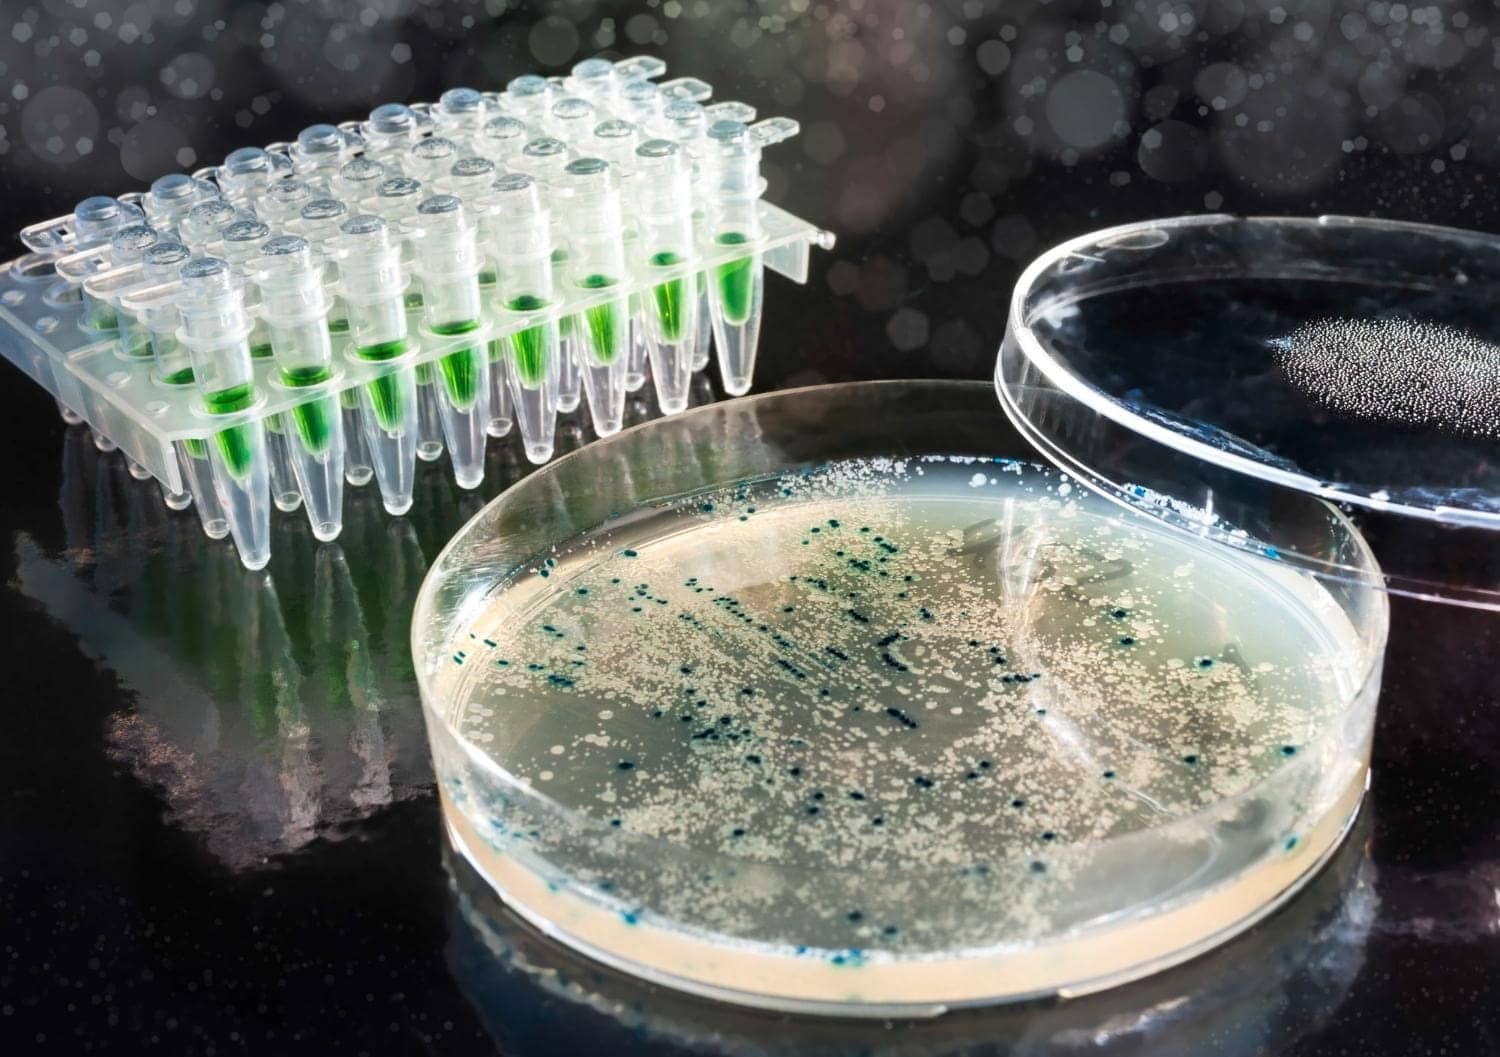 Image showing bacterial colonies on agar-agar